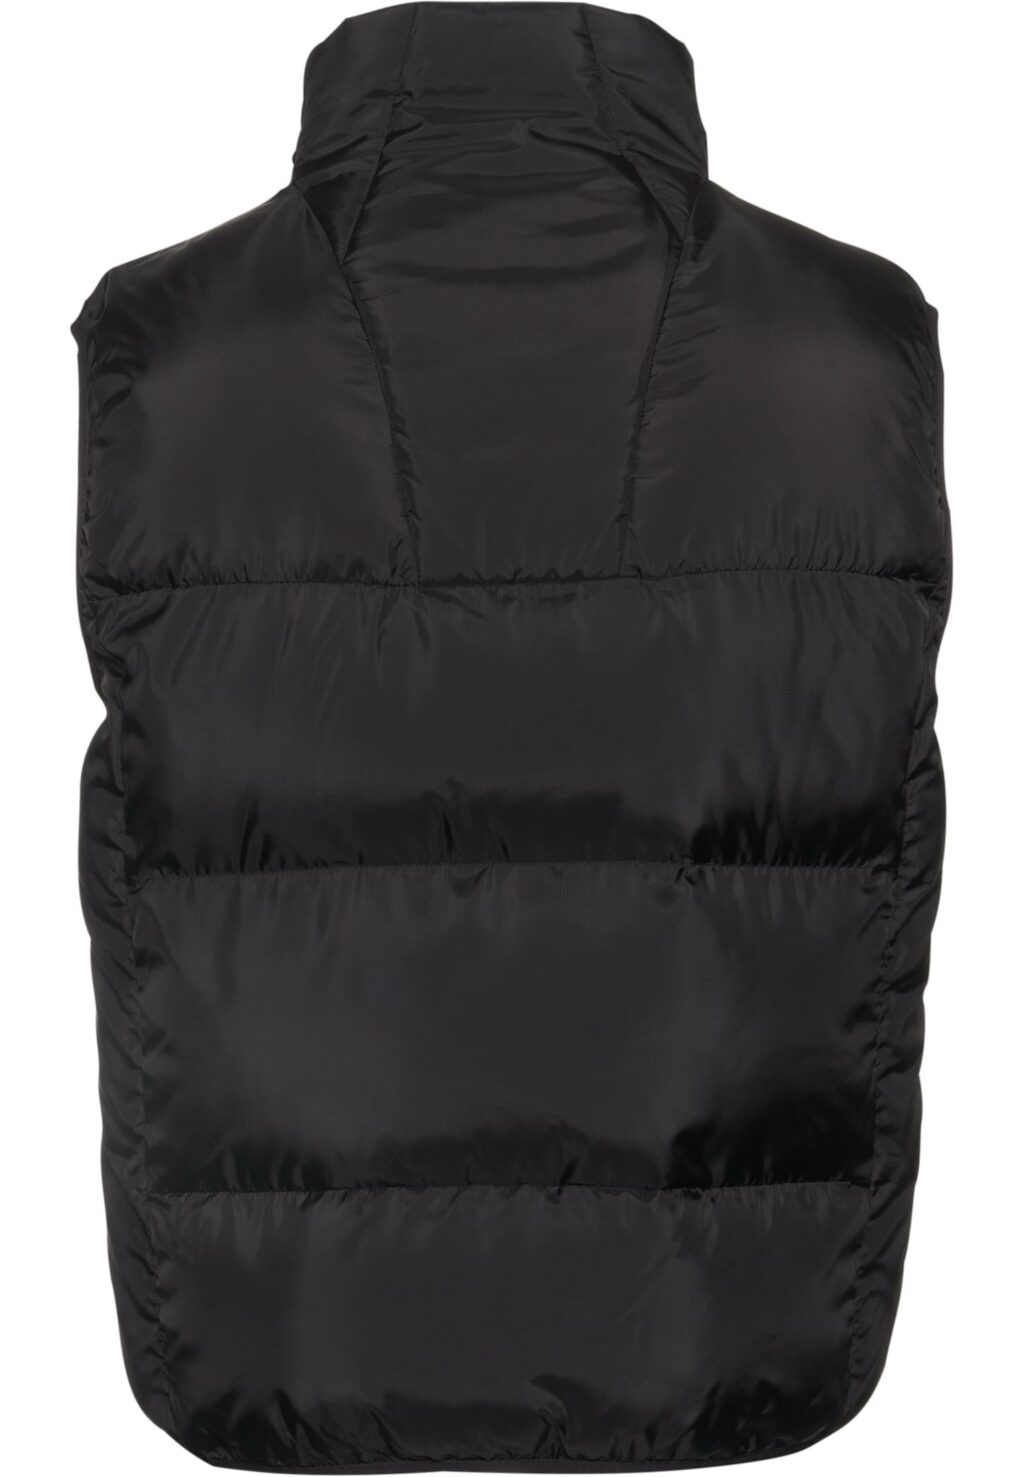 PM233-017-1 SP Bubble Vest 1.0 black 6072255